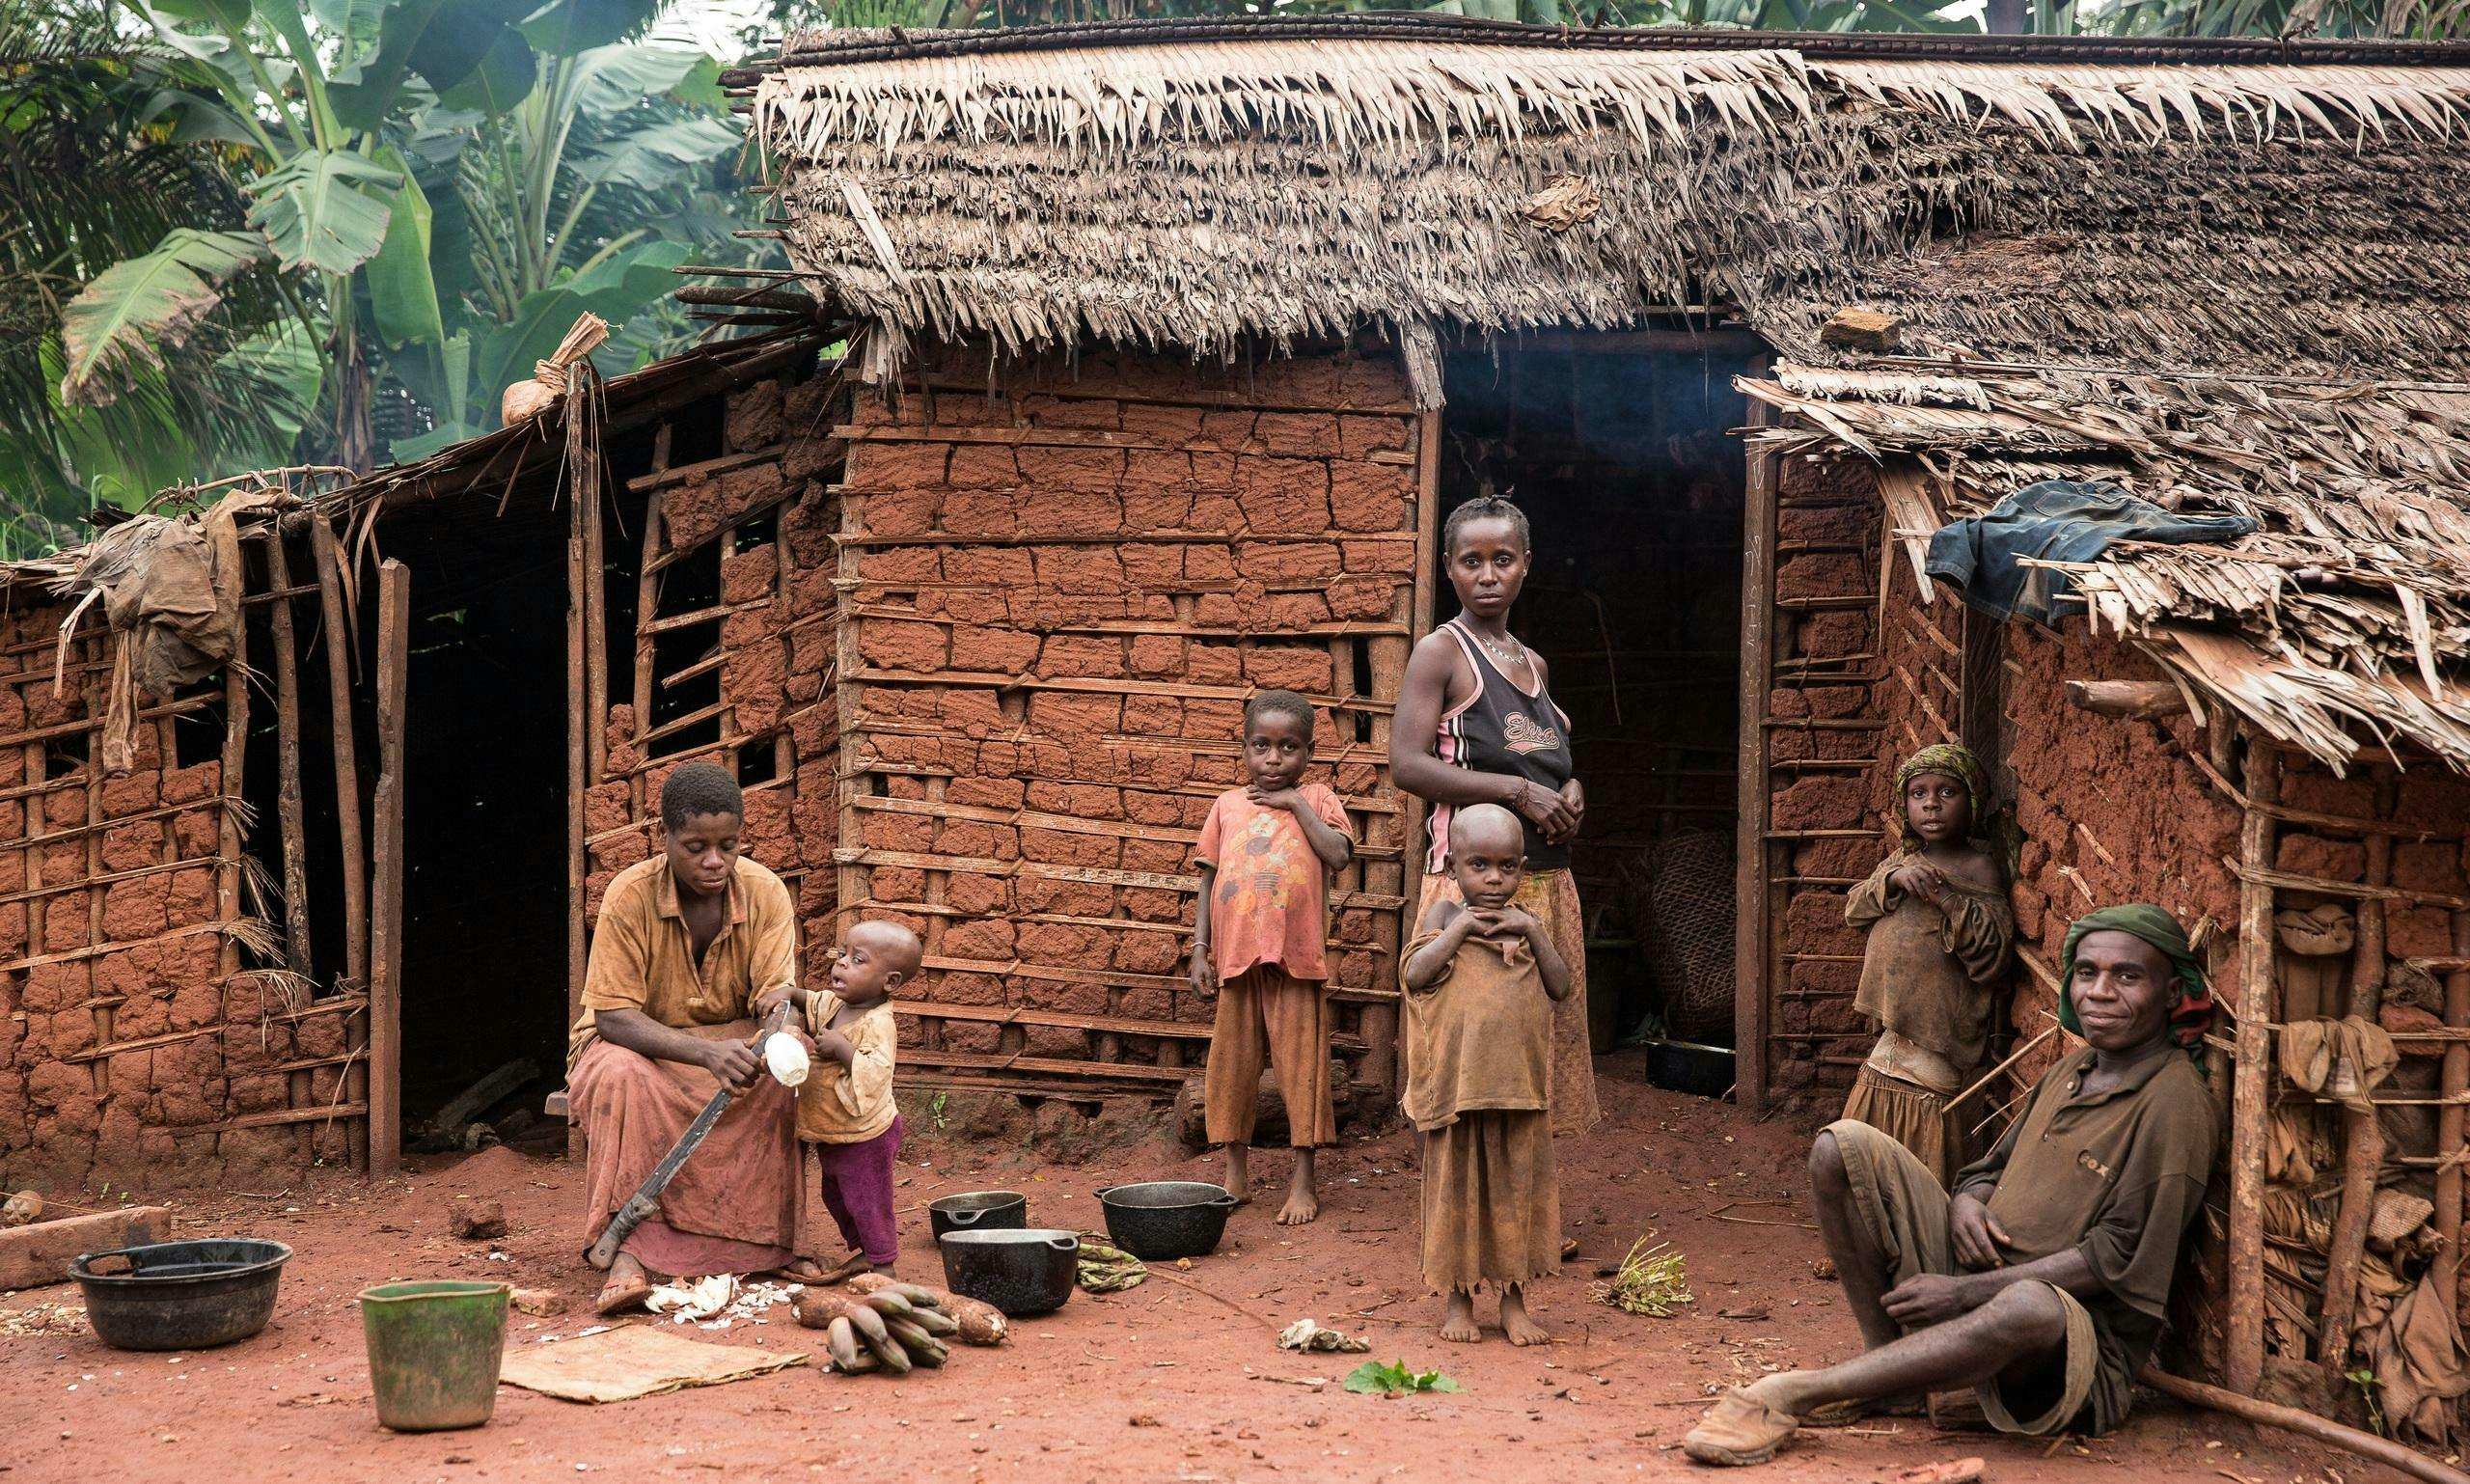 Eine Baka-Familie vor einer Lehmhütte in ihrem Dorf. Eine Mutter und ihr Kind sitzen am Boden und bereiten Essen zu. Drei weitere Kinder und eine junge Frau stehen vor dem Eingang. Ein älterer Mann sitzt am Boden und lehnt sich gegen eine Wand.